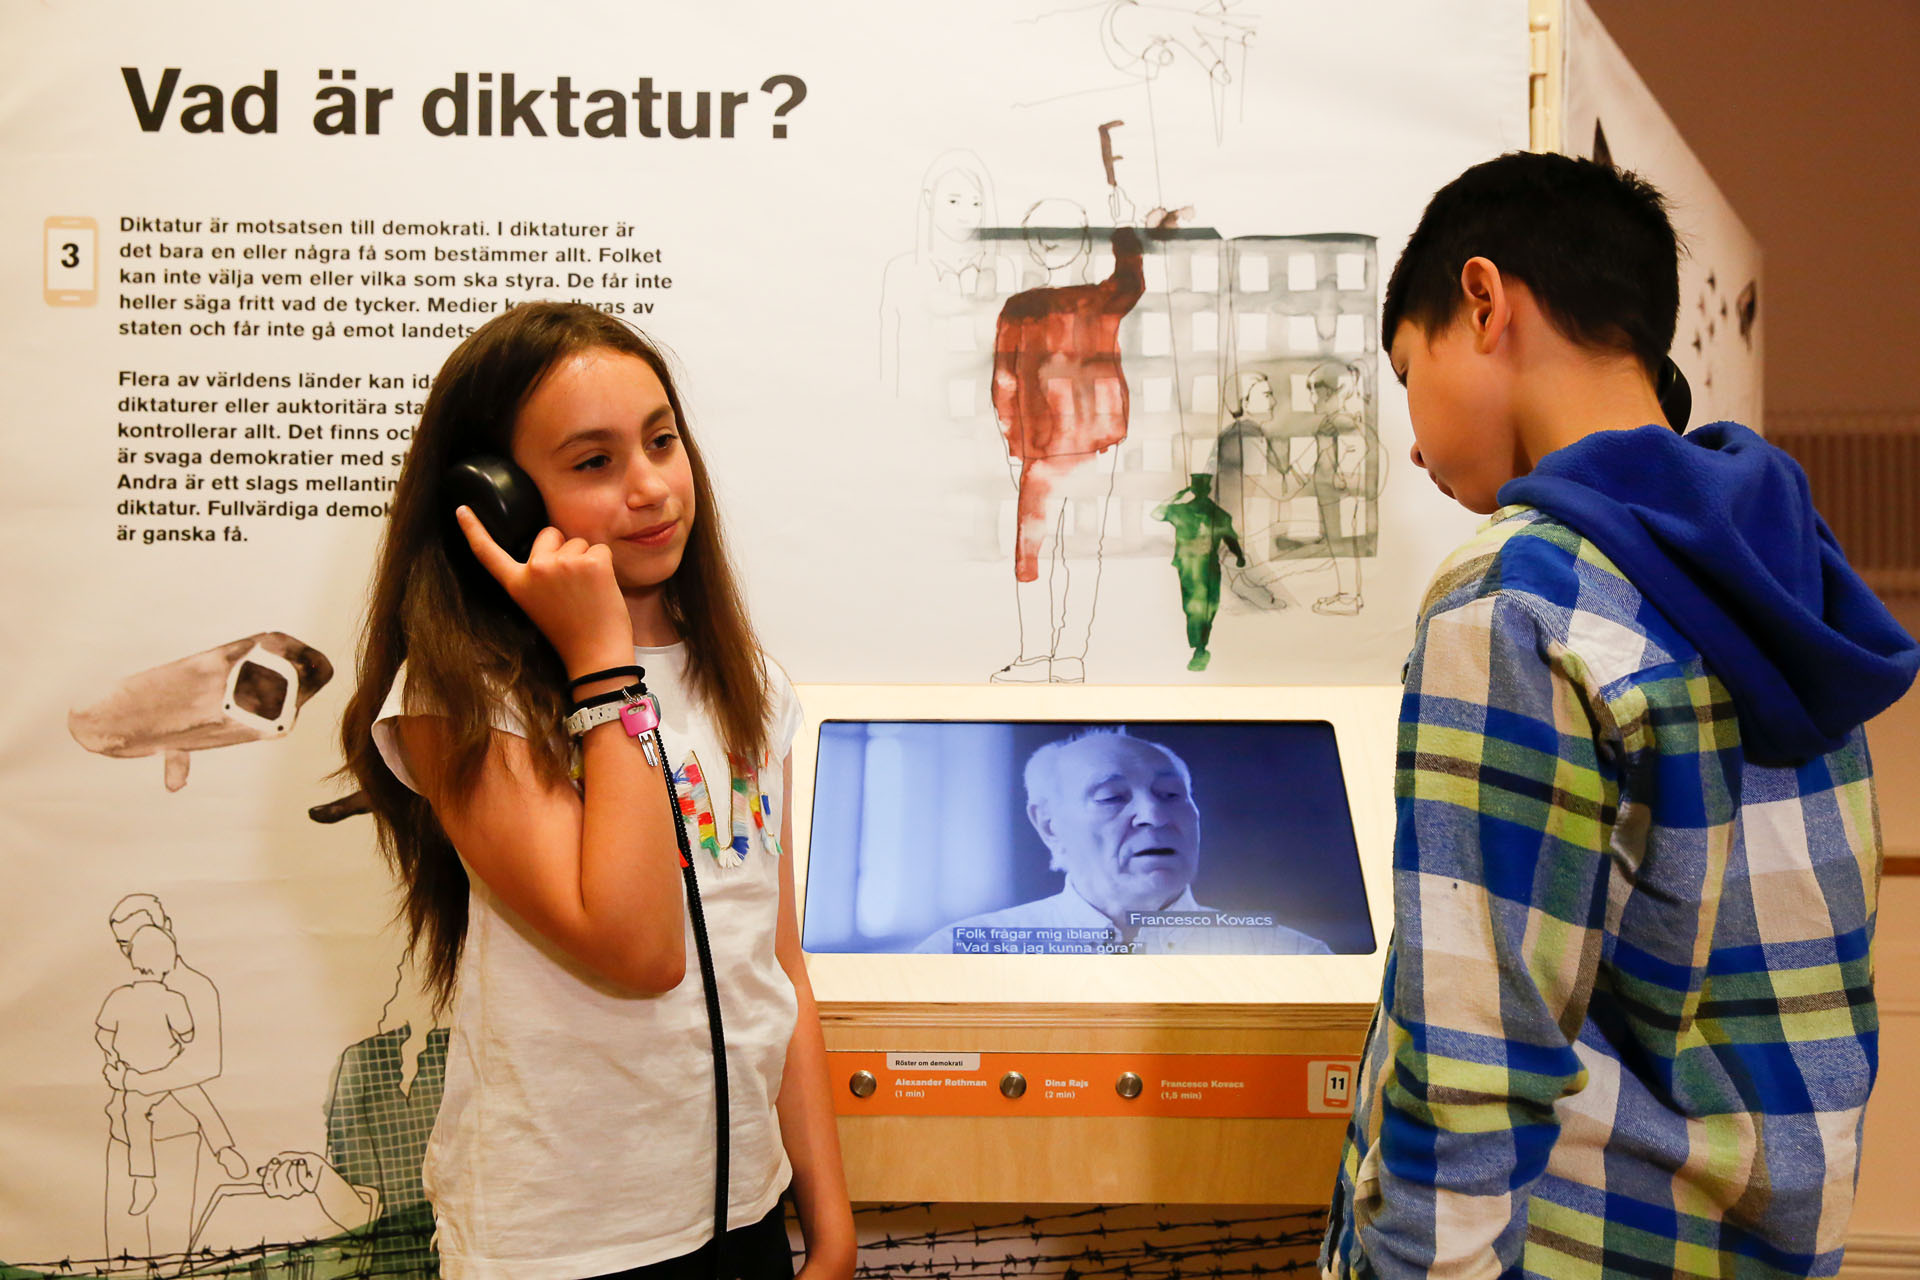 Två barn i tioårsåldern i en utställning. Det ena barnet lyssnar på något i en hörlur och det andra barnet tittar på en digitalskärm som visar en äldre man.